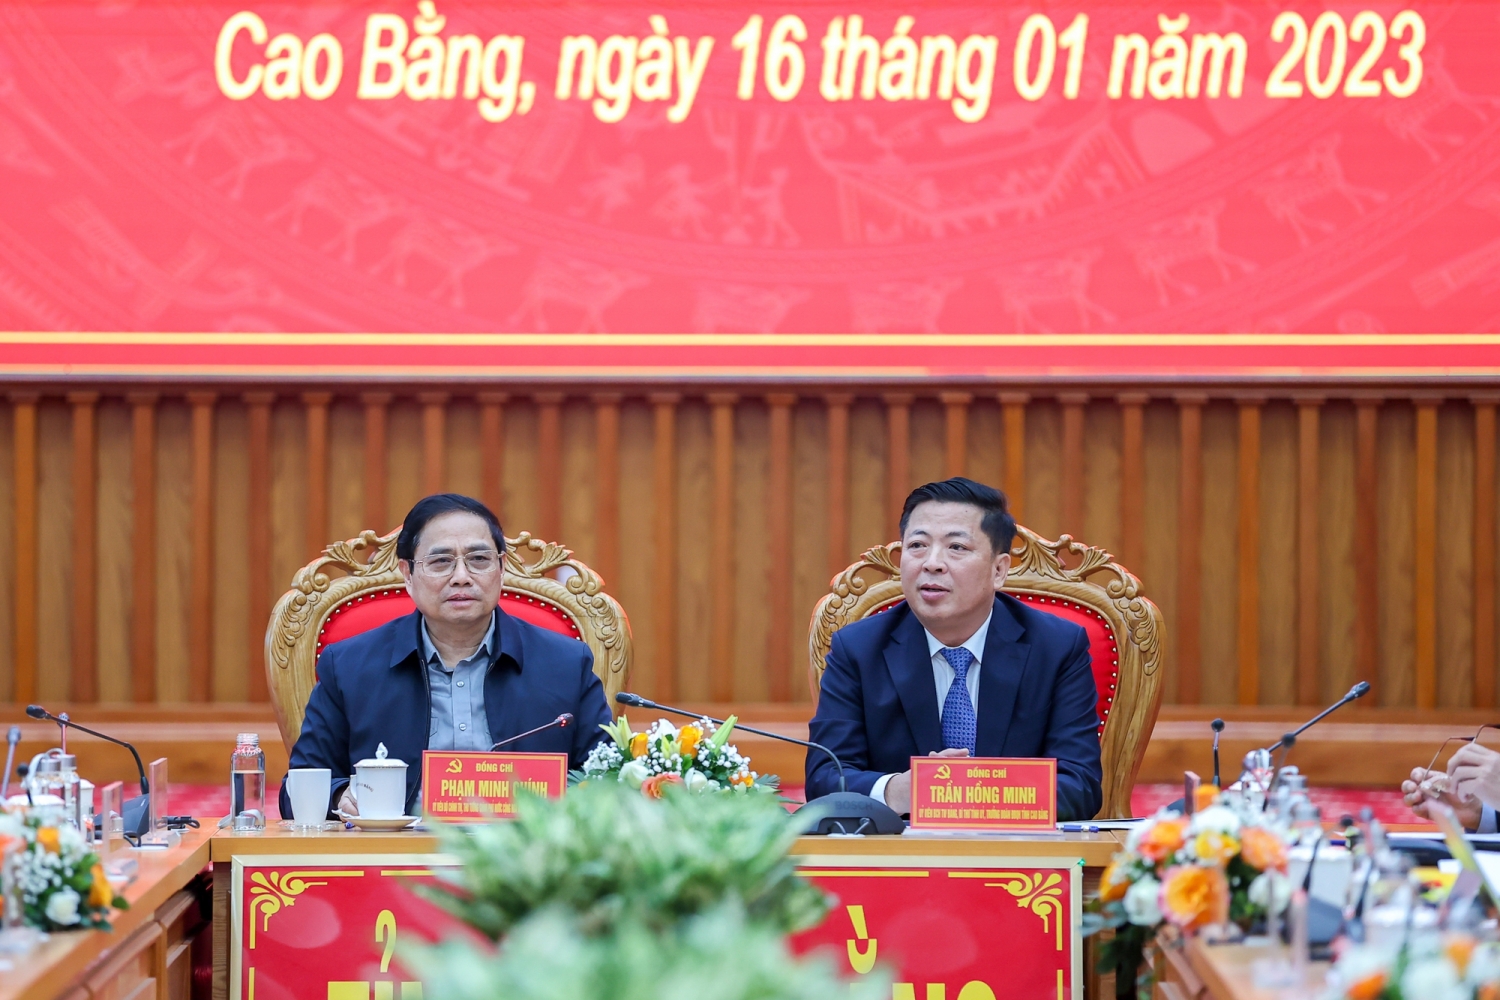 Thủ tướng: Ưu tiên số 1 để khởi công dự án cao tốc nối Lạng Sơn - Cao Bằng